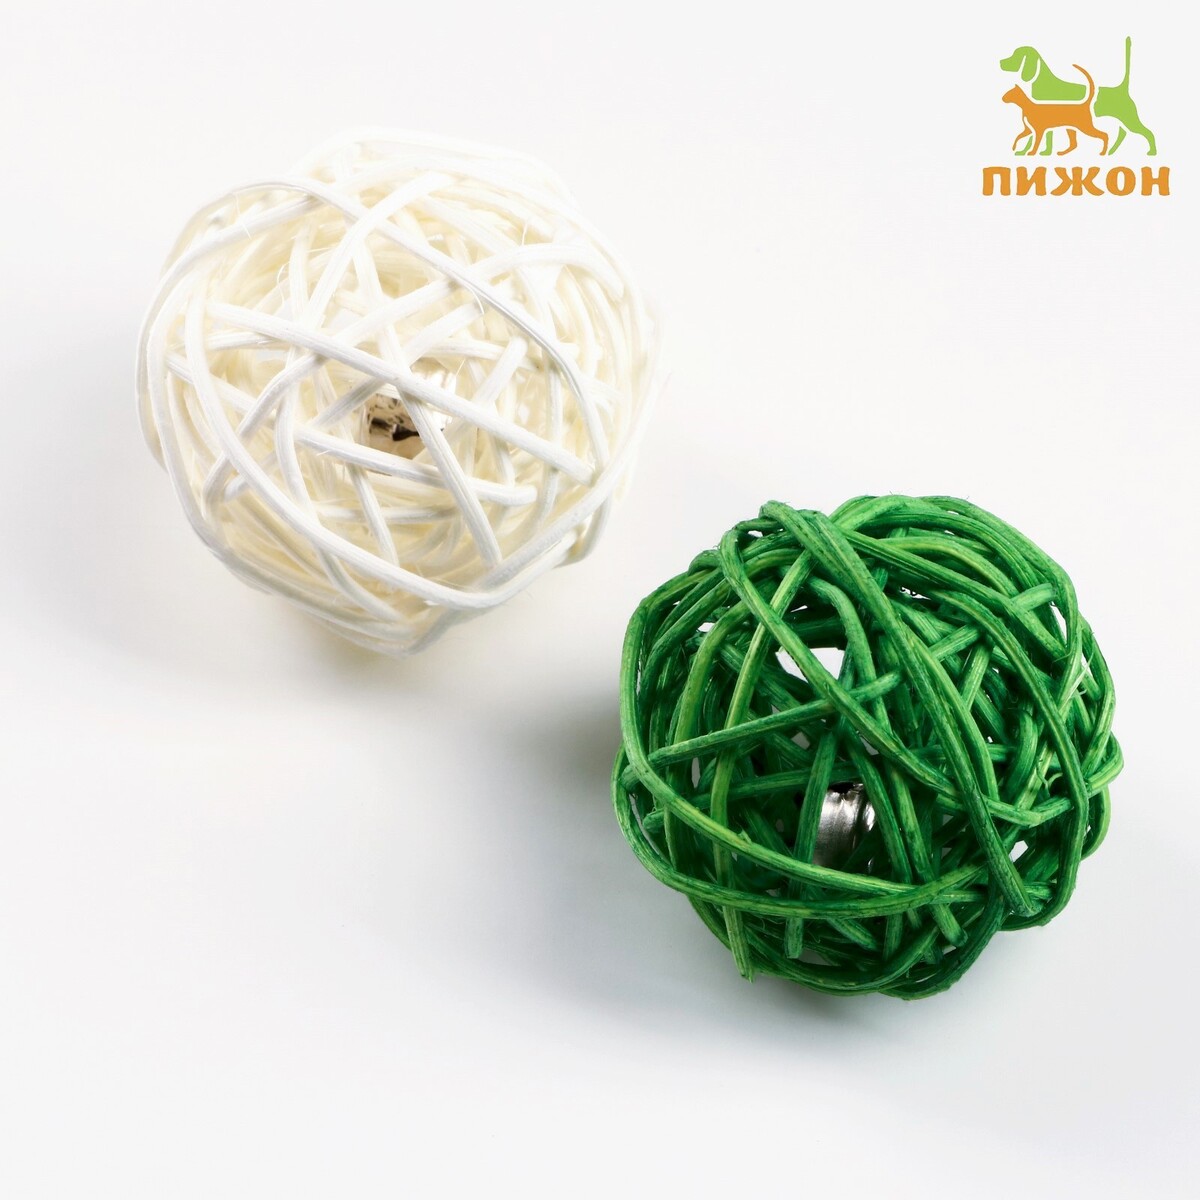 Набор из 2 плетеных шариков из лозы с бубенчиком, 5 см, белый/зеленый набор корзин плетеных бамбук 3 шт натуральный средние